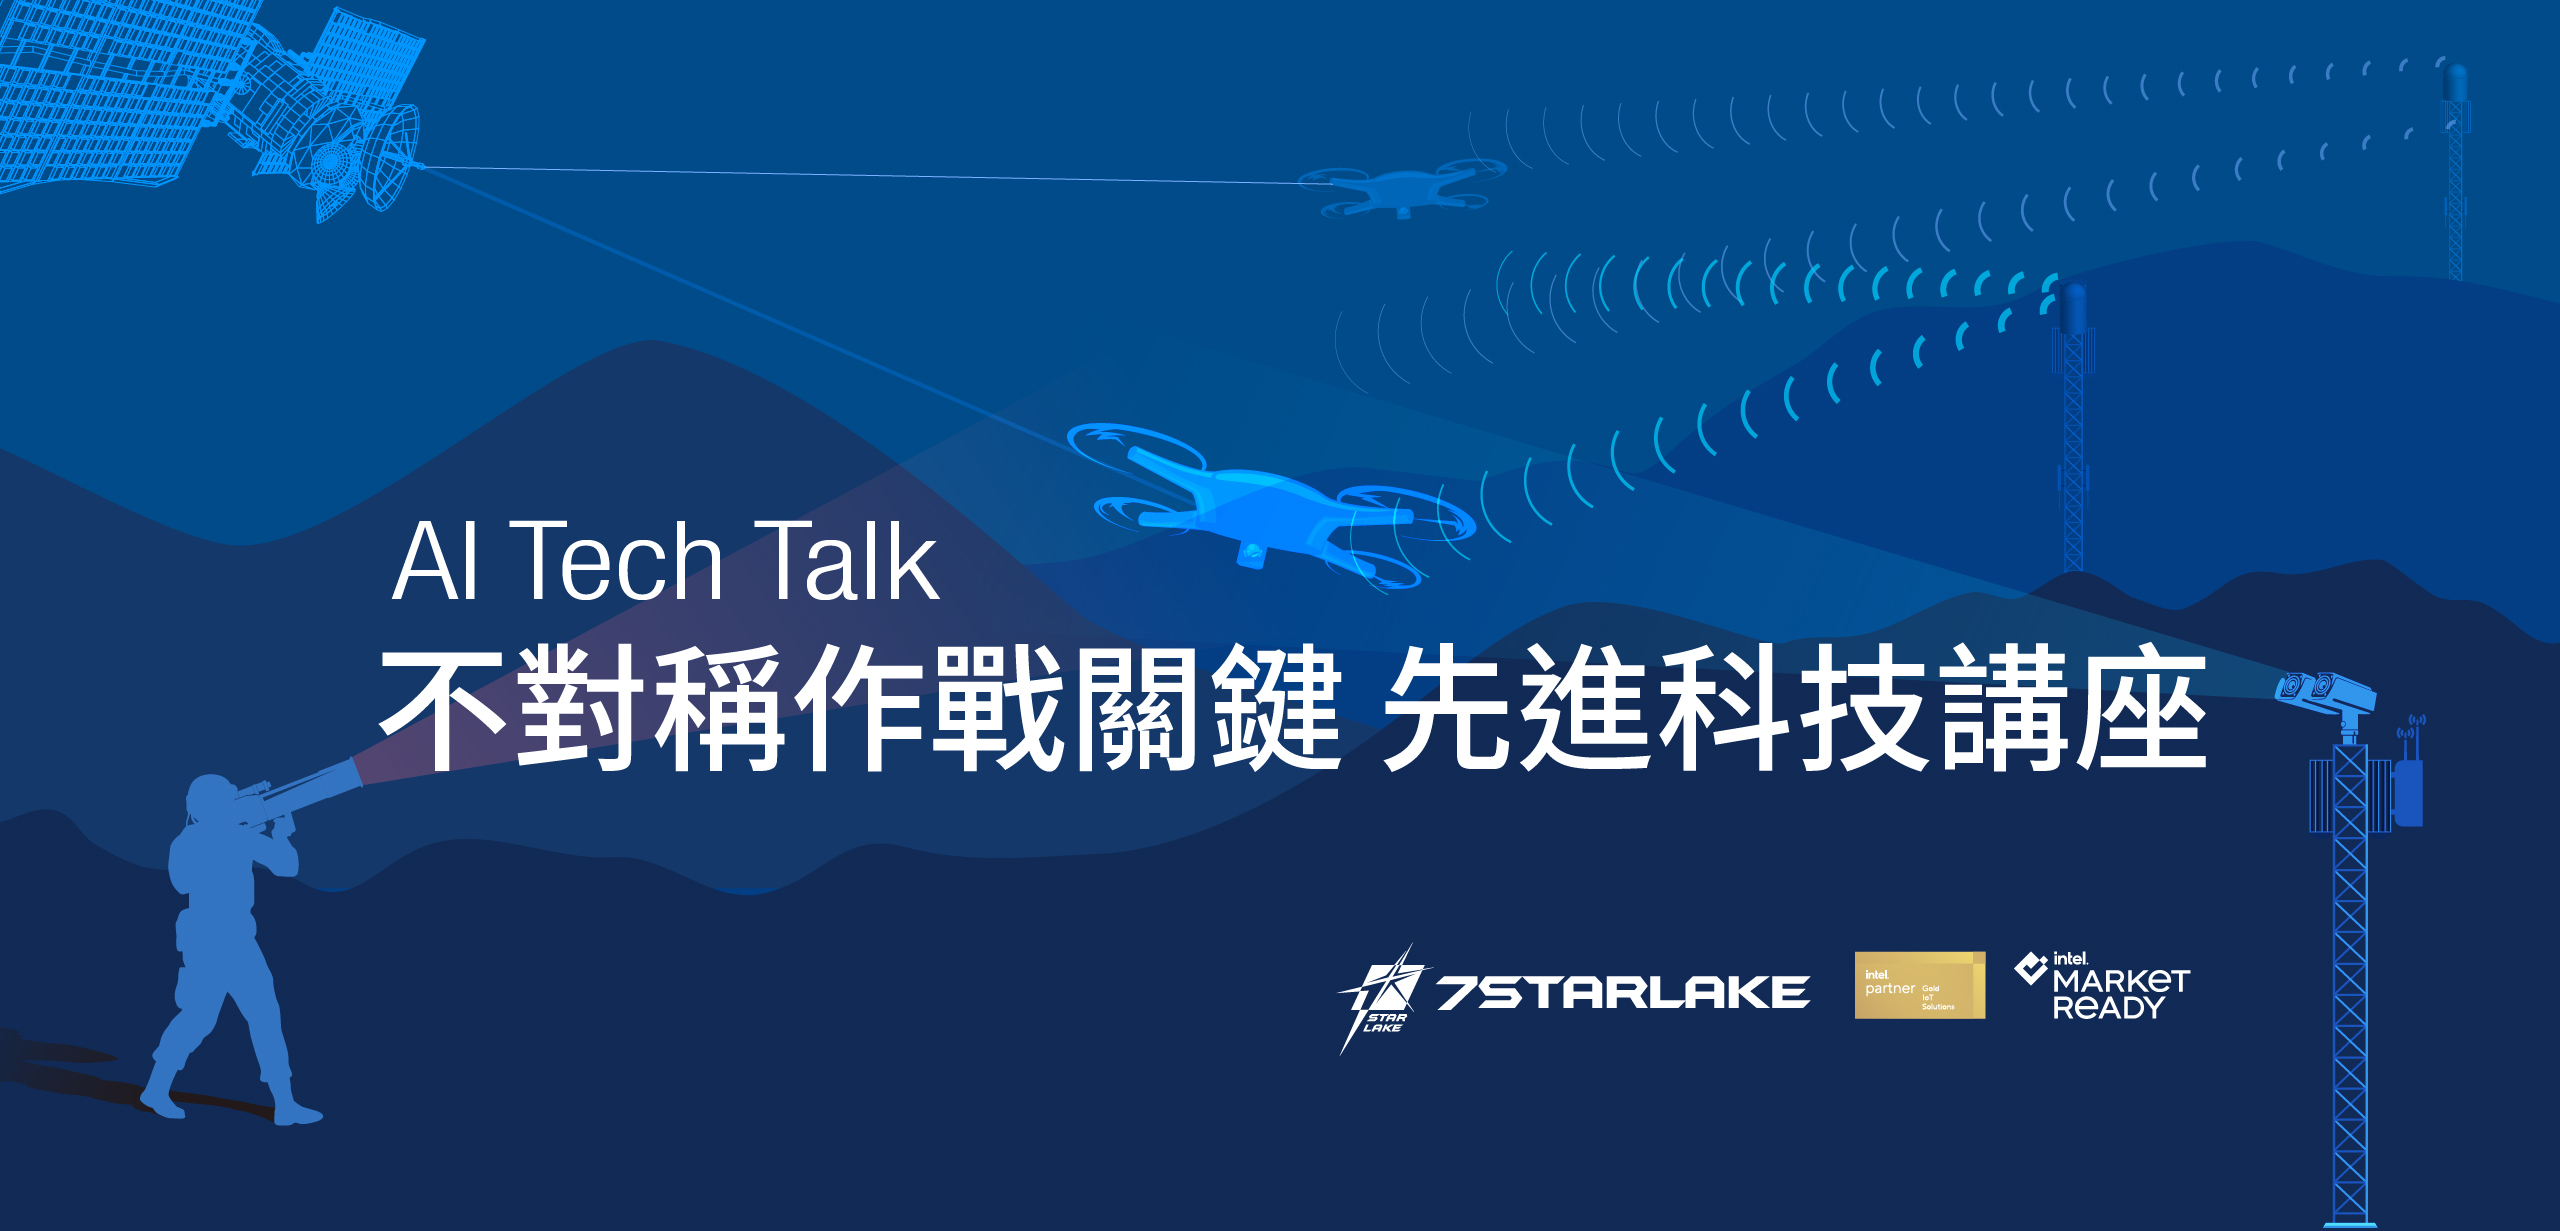 科技賦能重塑全球戰略新思路7StarLake論壇邀專家開講 